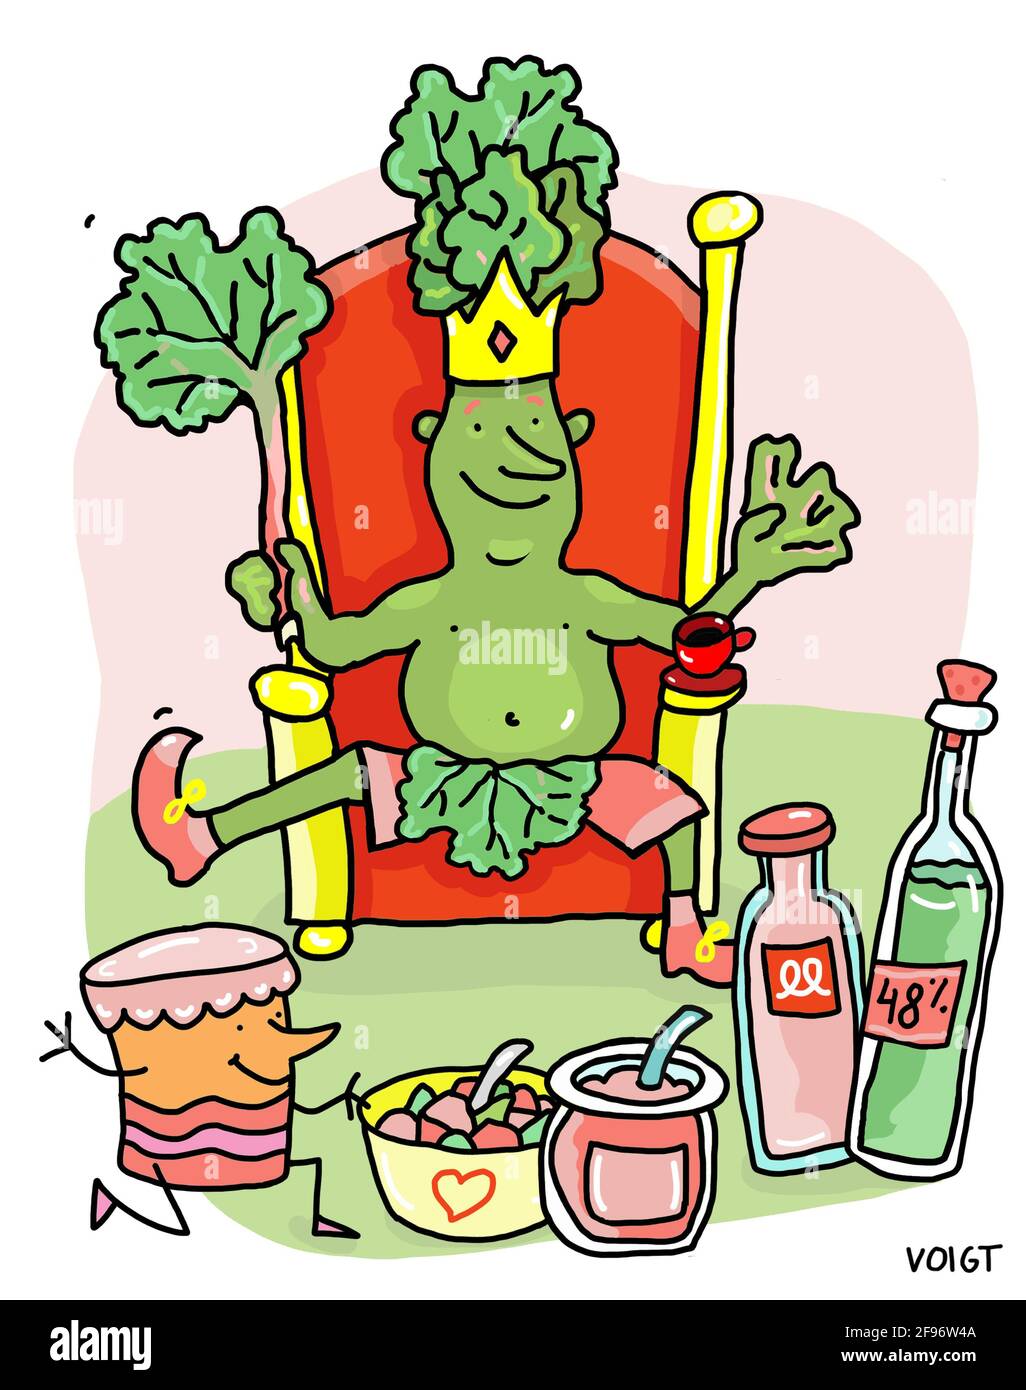 Illustrazione, cartone animato, re Rhubarb siede sul suo trono ed è deliziato con tutto il buon cibo che è stato fatto di lui. Foto Stock